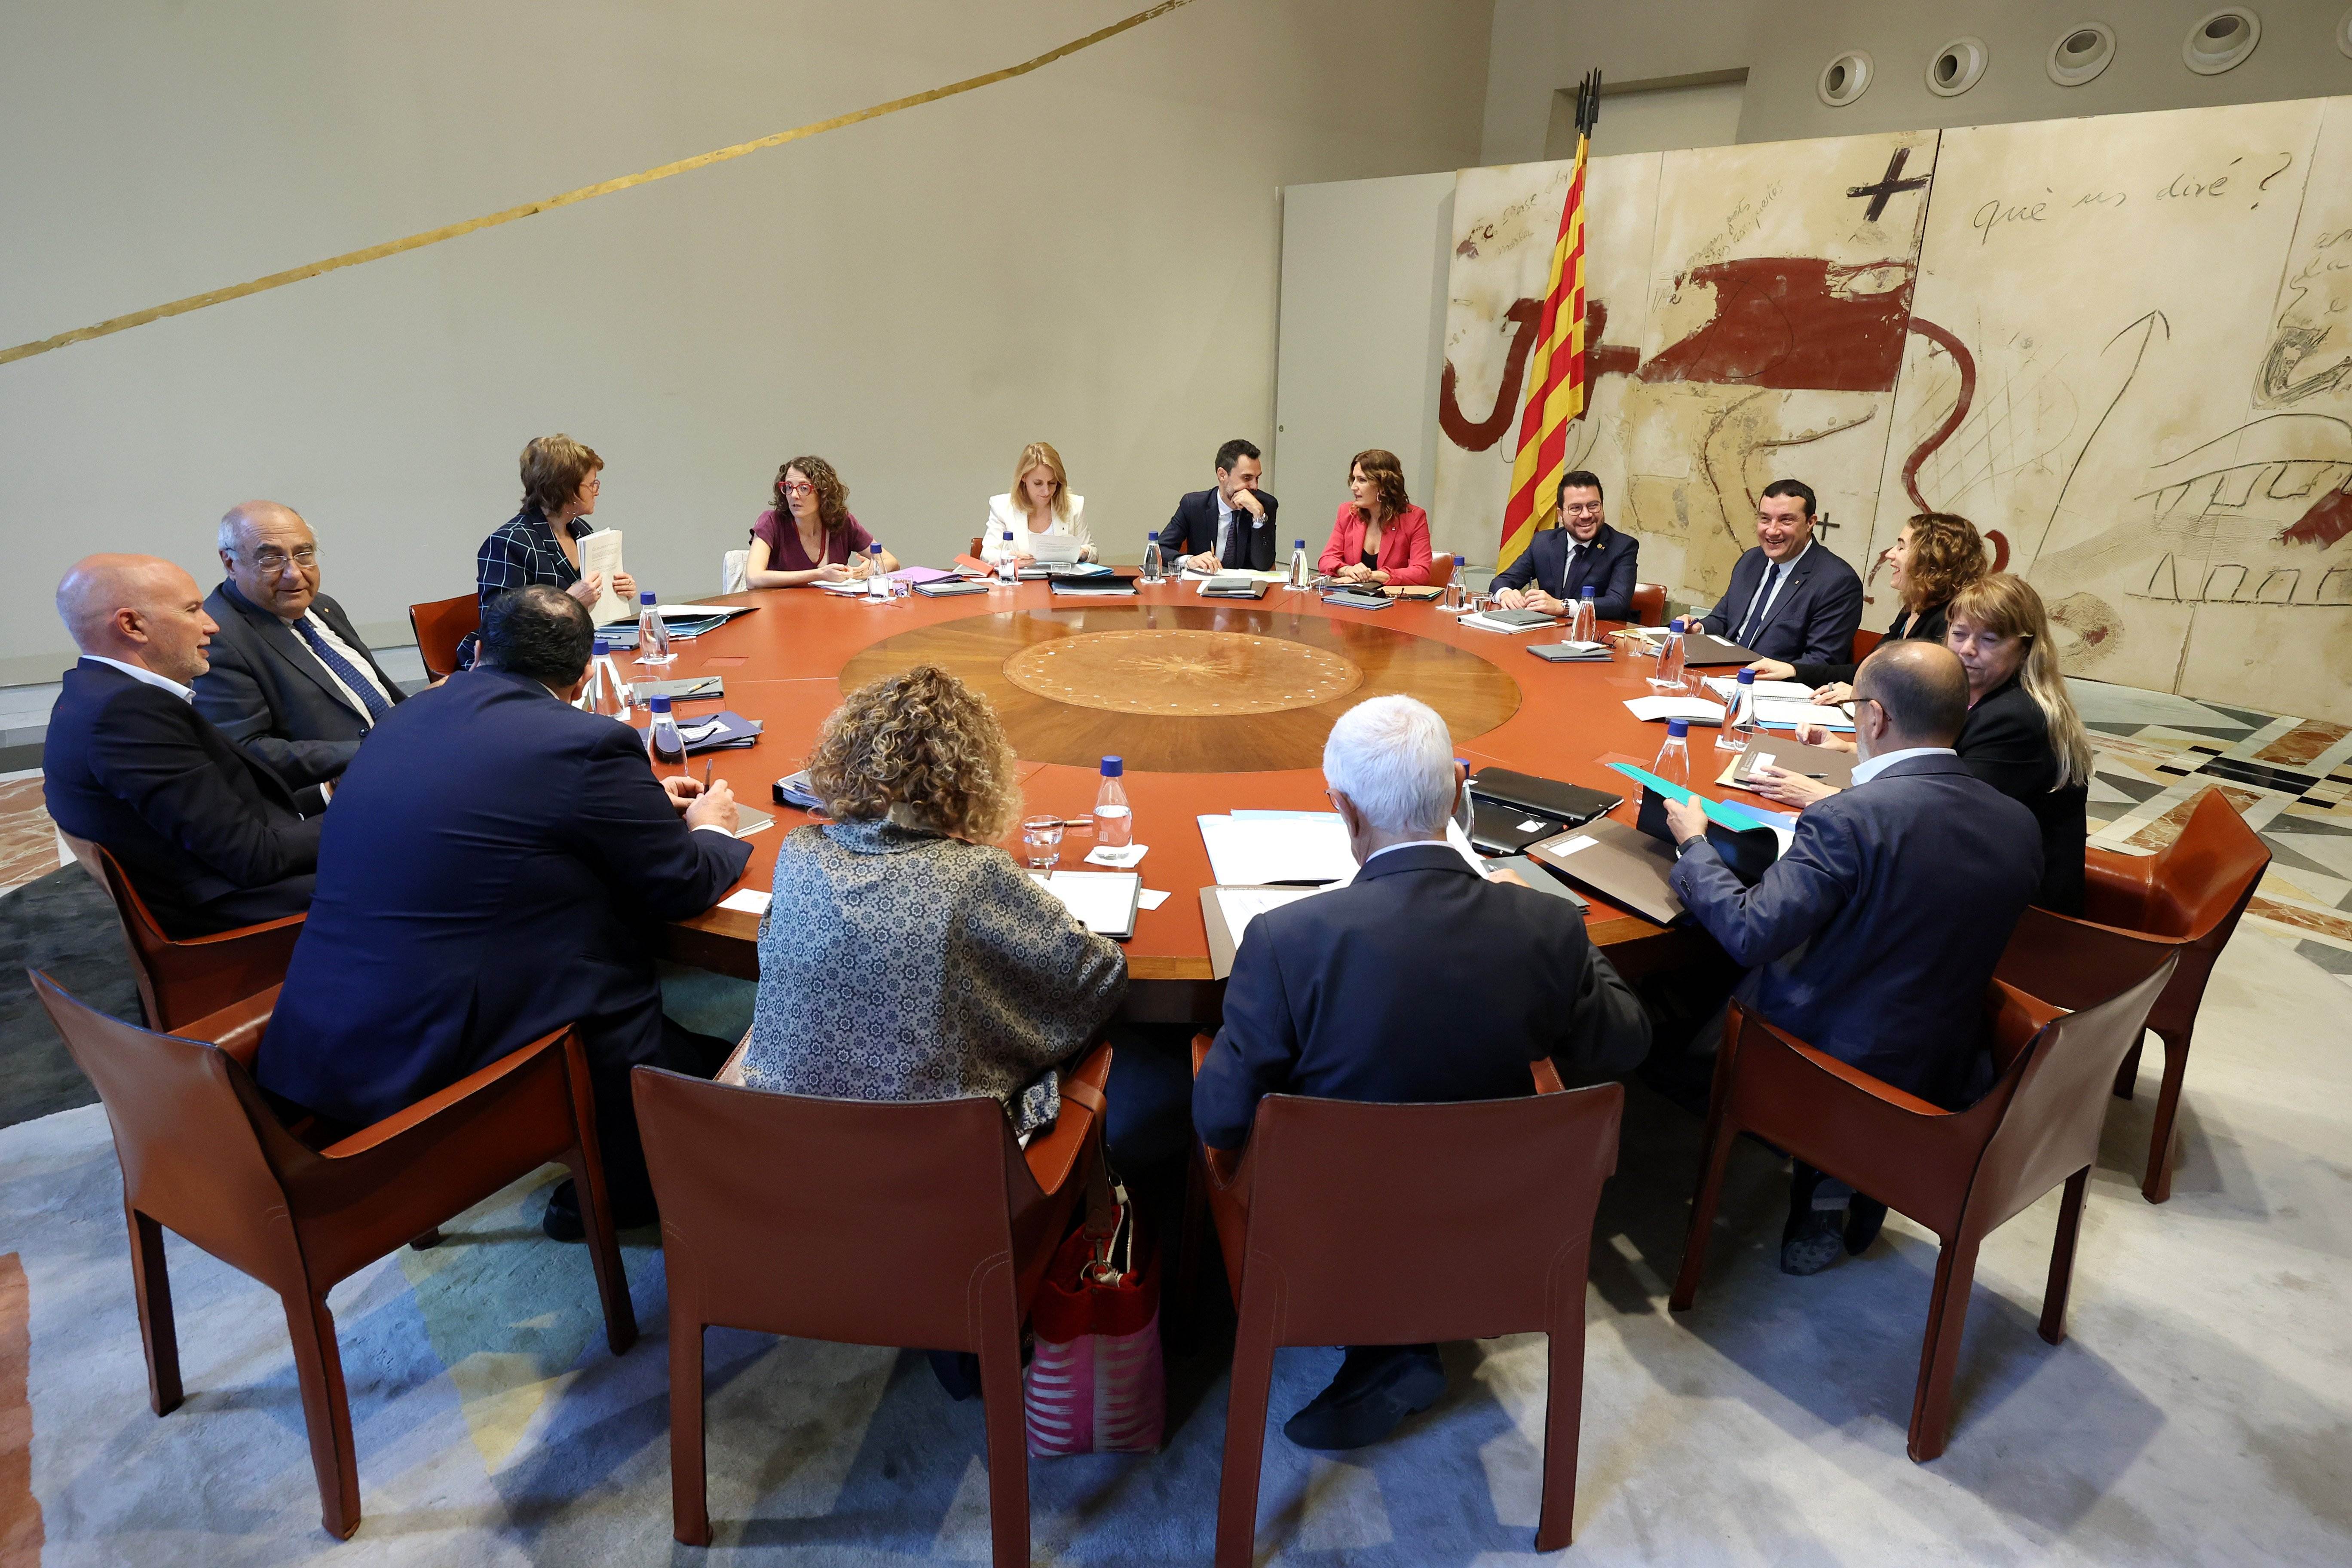 El Govern veu com un gest la reunió entre PSOE i Puigdemont i celebra que hagi “entrat de ple” en el diàleg